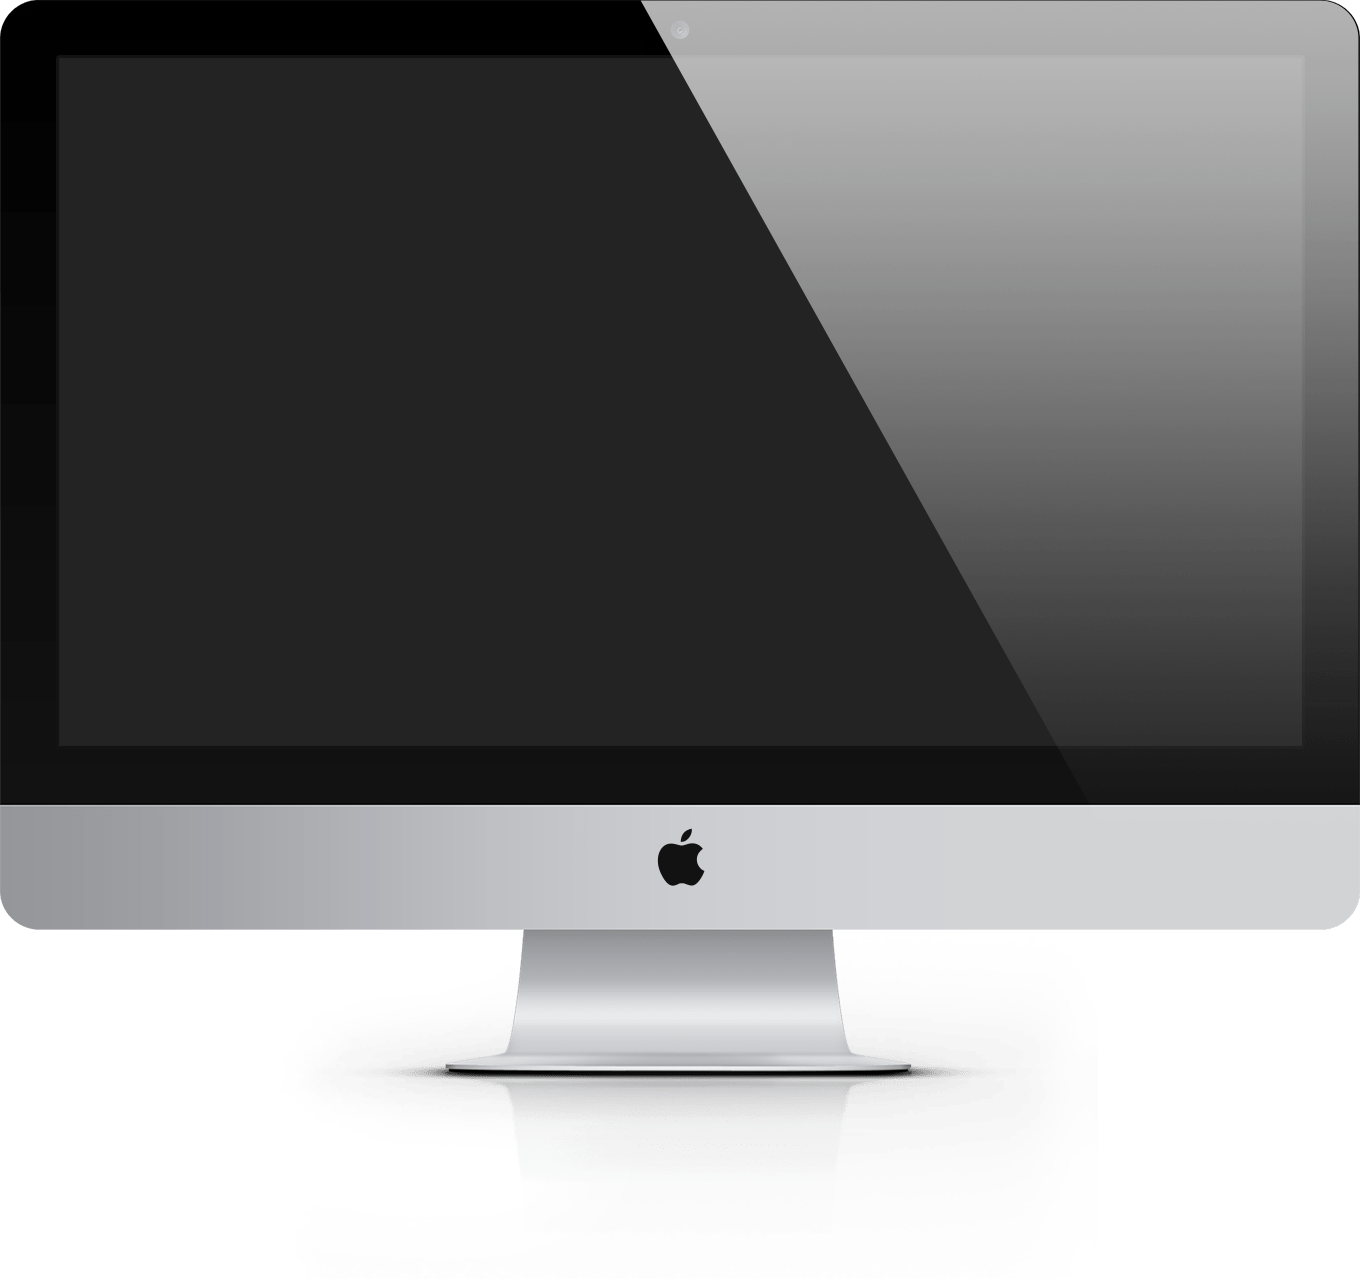 IMac Bildschirm - Stilelement